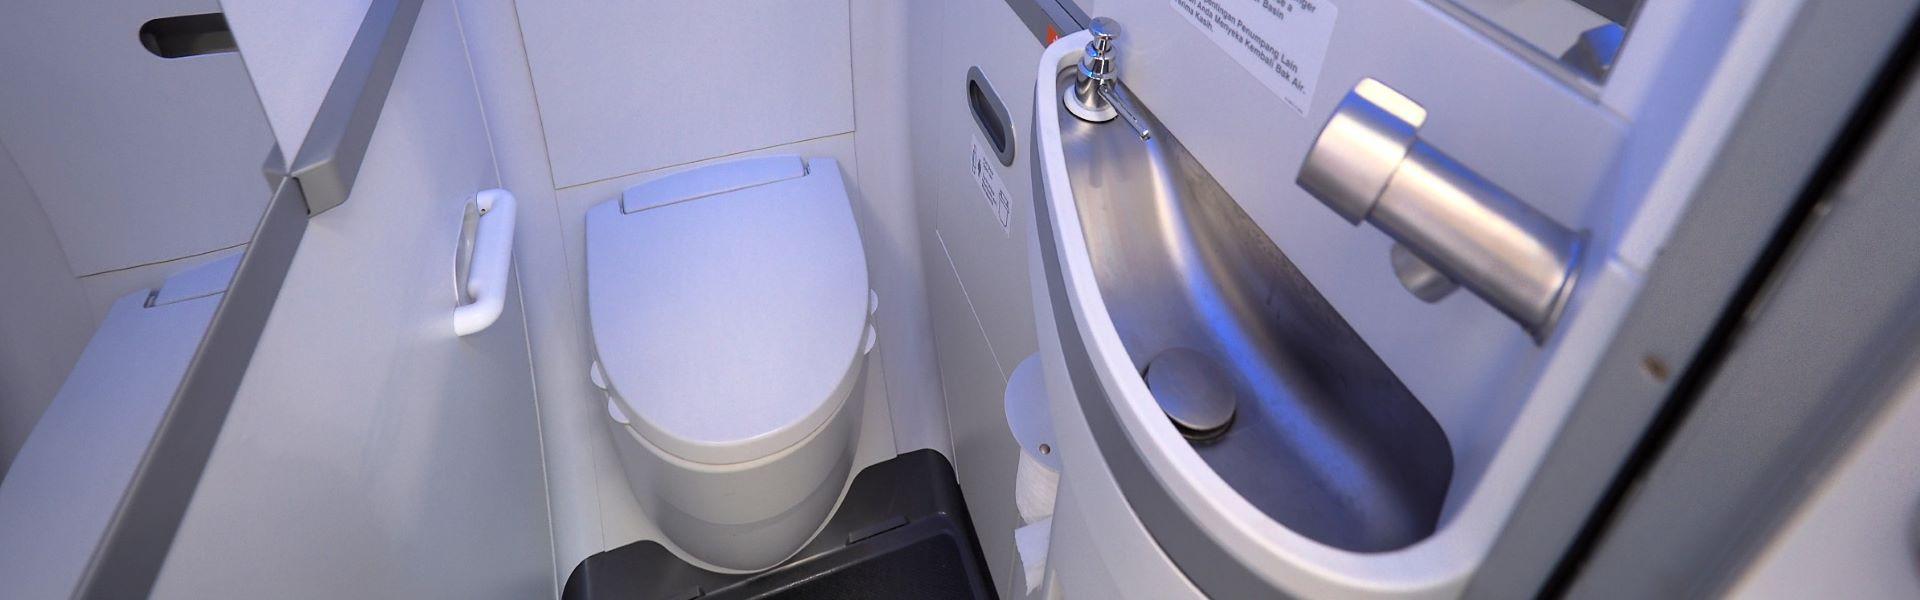 حقایق جالب در مورد سرویس بهداشتی هواپیما